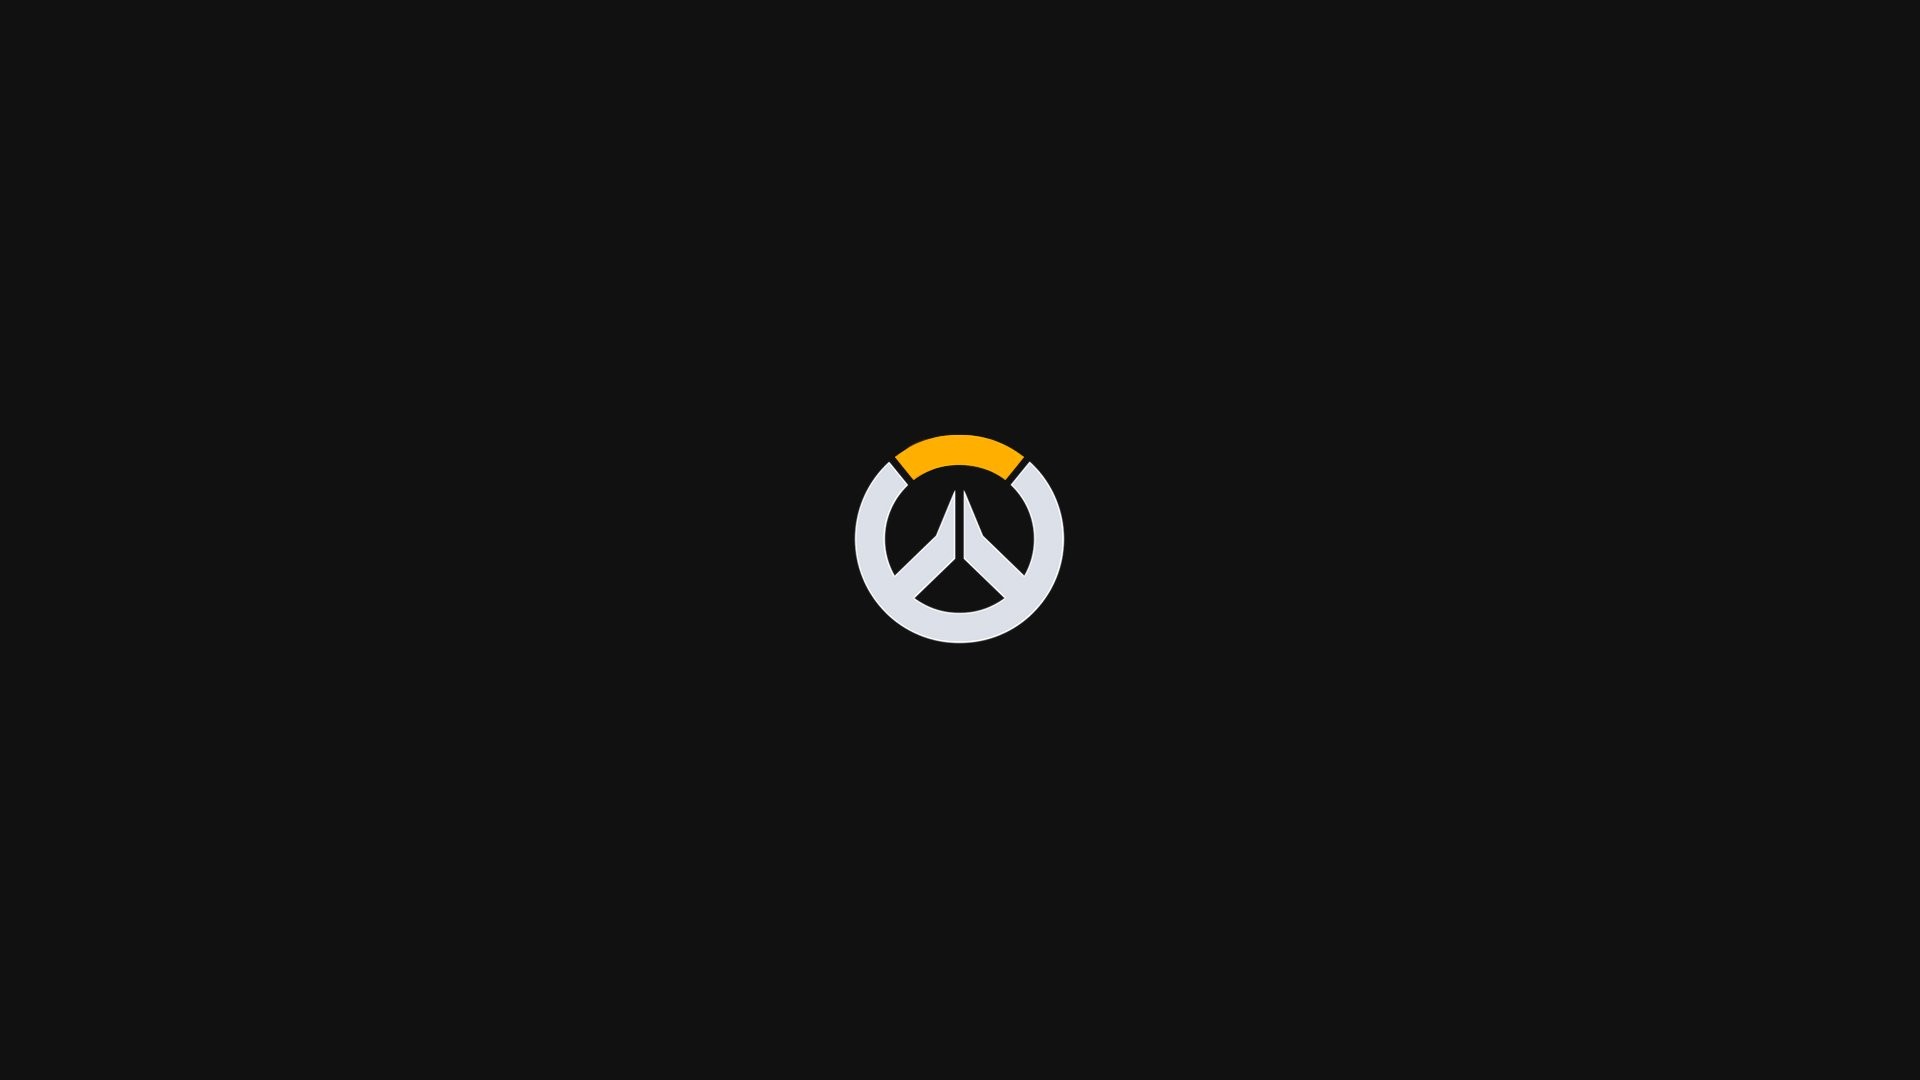 Video Game – Overwatch Logo Minimalist Wallpaper